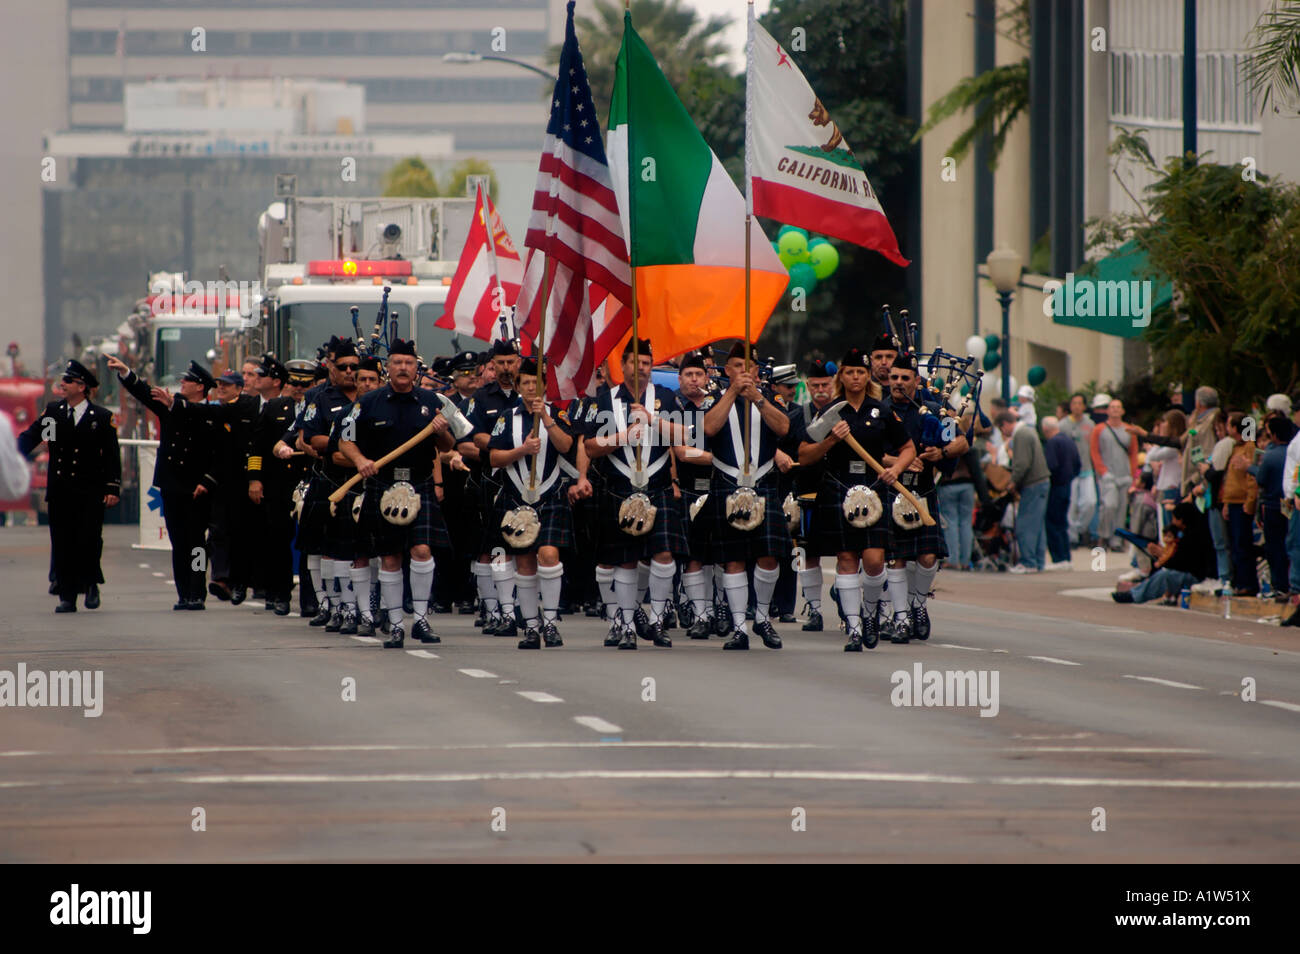 Feuerwehrleute tragen Kilts marschieren in St. Patricks Day Parade San Diego Kalifornien USA Stockfoto